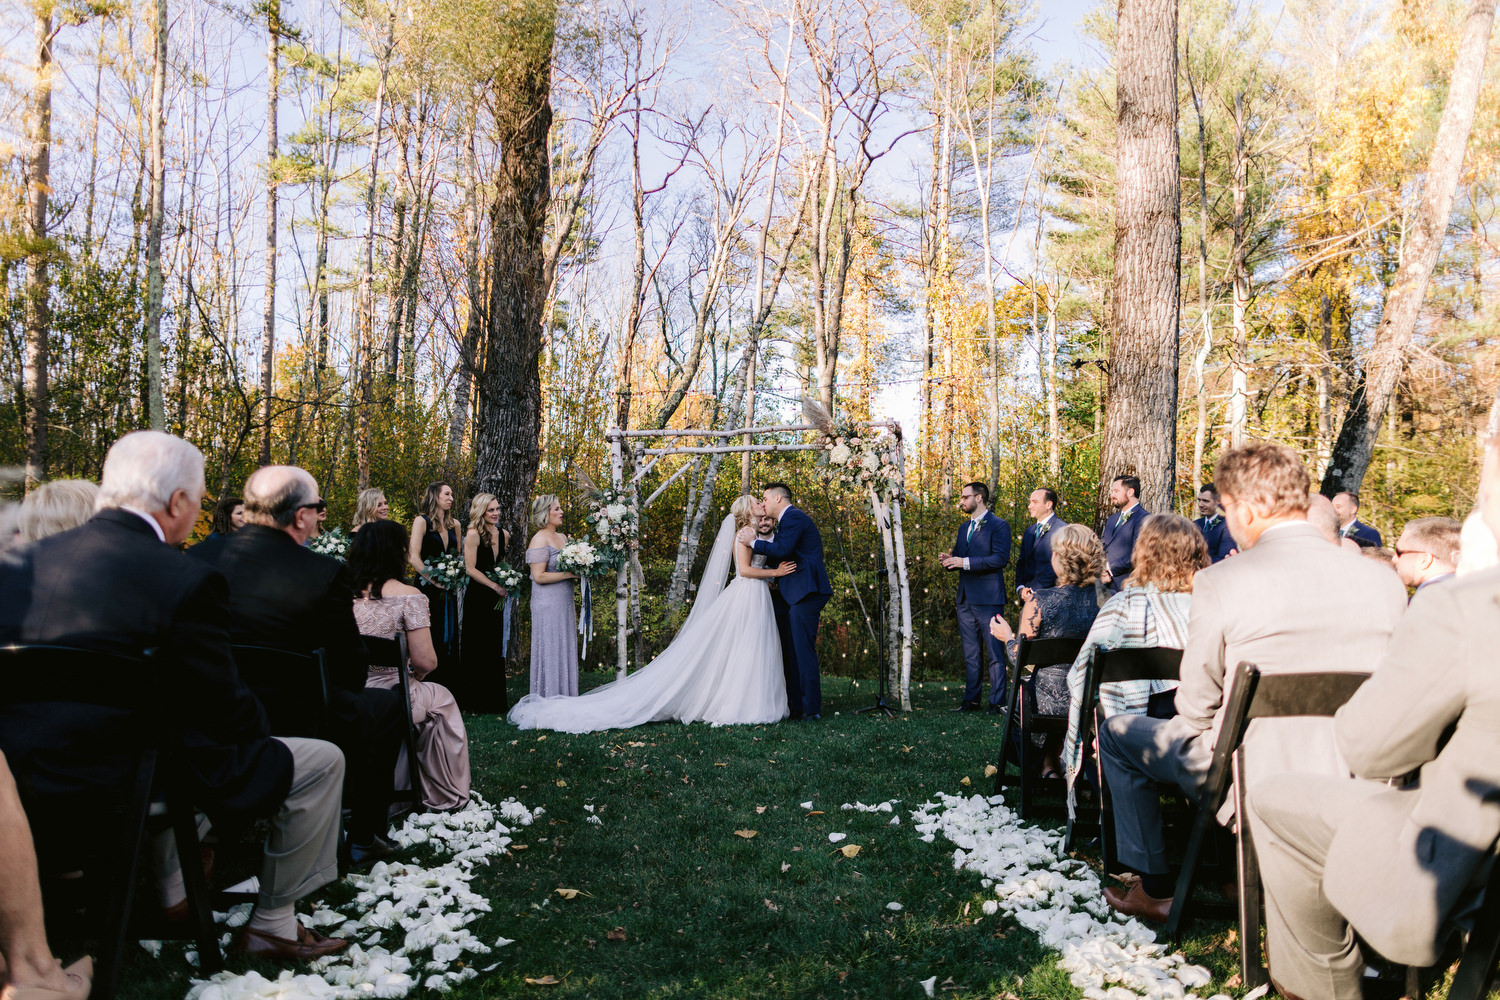 Outdoor wedding in Vermont